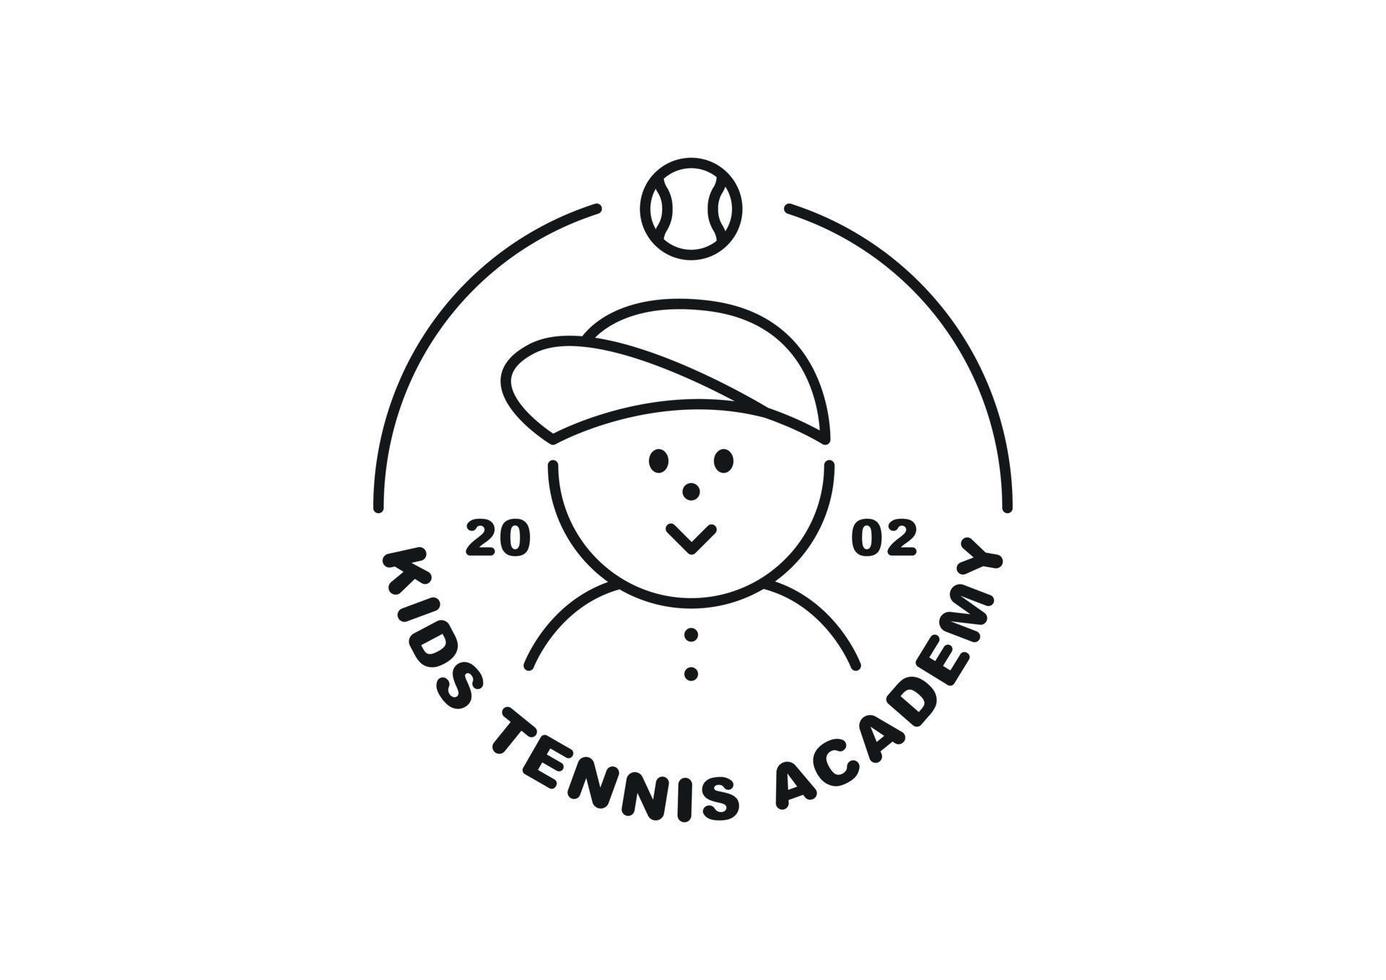 logotipo del club de tenis. linda cara de niño sonriente en línea circular. ilustración de línea simple en blanco y negro. vector